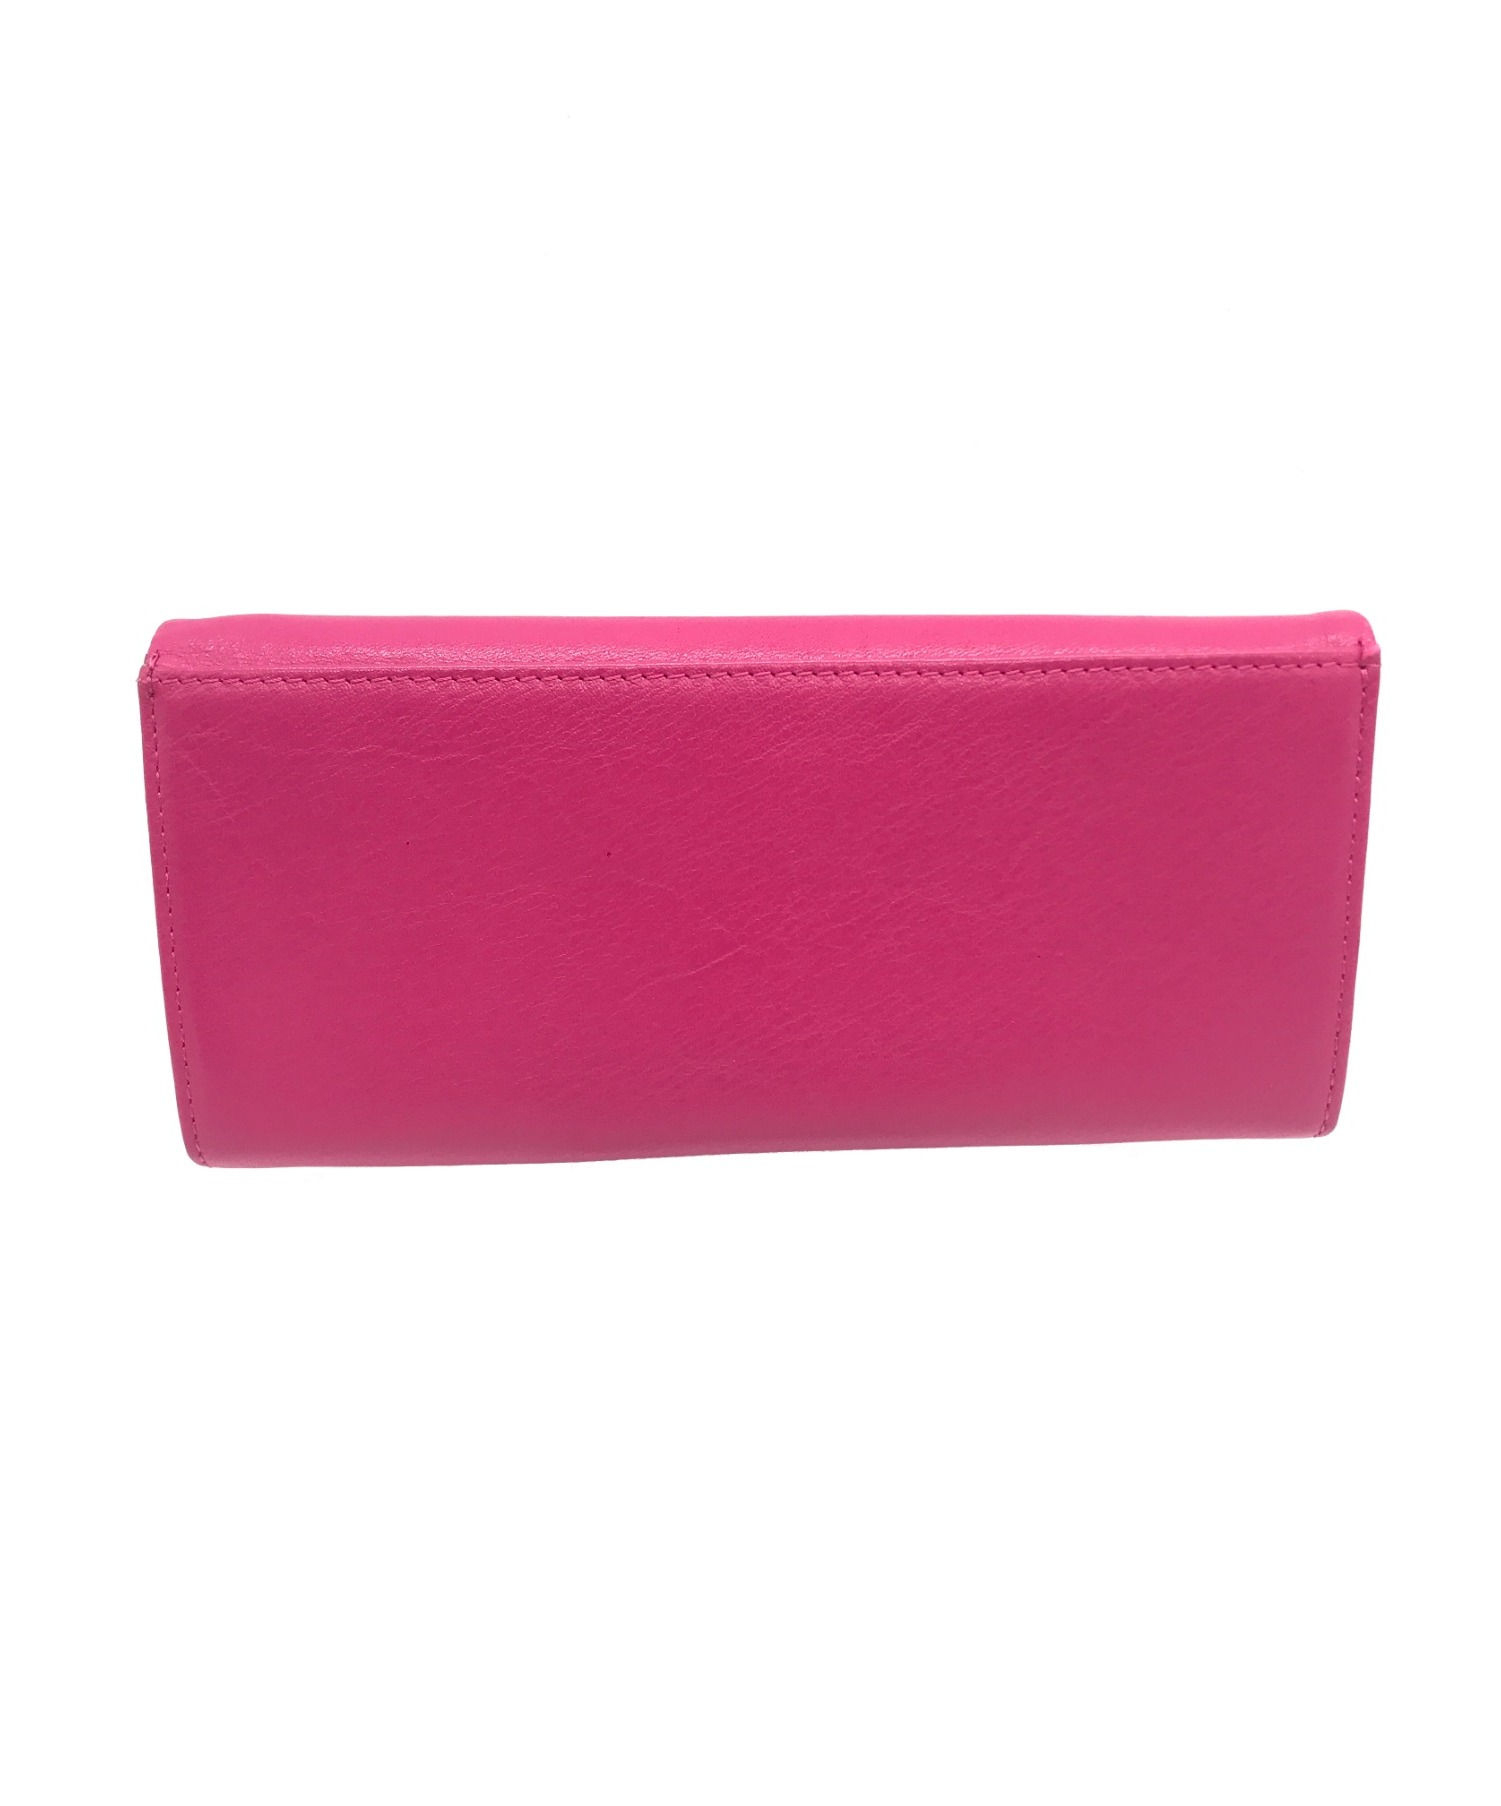 ANNA SUI (アナスイ) 長財布 ショッキングピンク サイズ:実寸サイズをご確認ください。